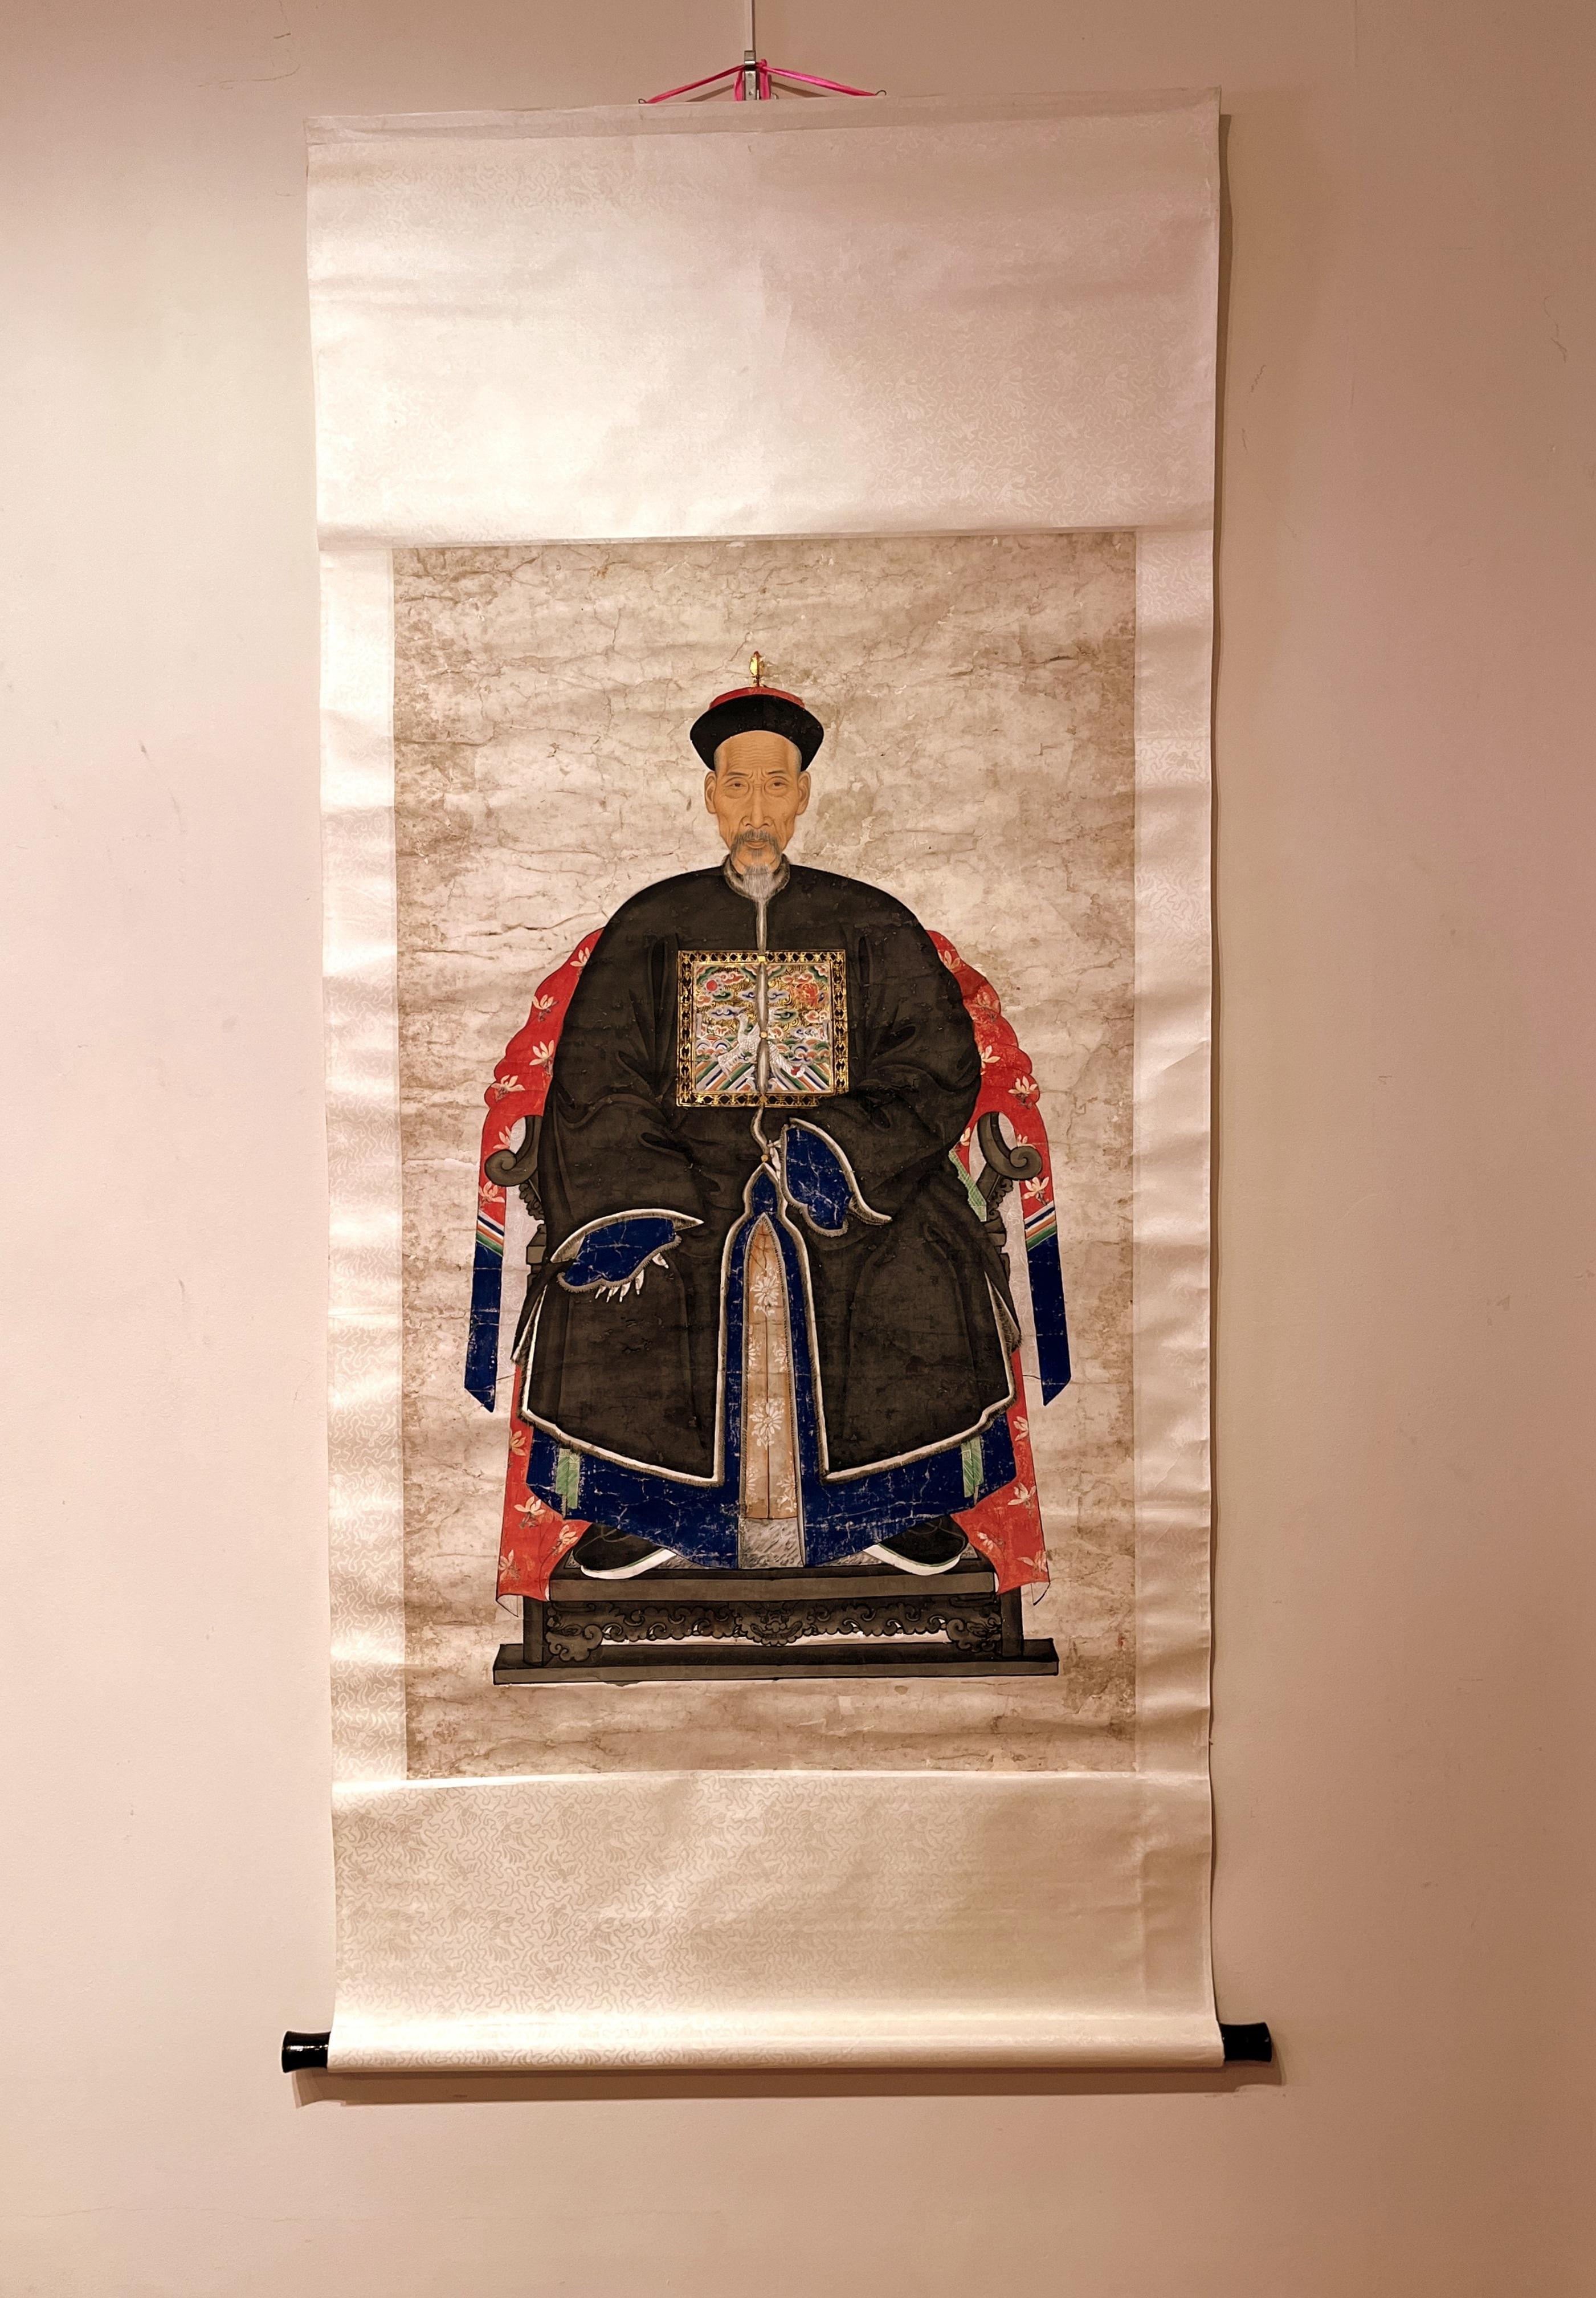 Portrait d'officier impérial ancestral chinois de la dynastie Qing, 19e siècle,
L'officier impérial assis dans une posture digne sur une chaise à dossier en fer à cheval, portant un chapeau officiel et un insigne de grade représentant un paon en